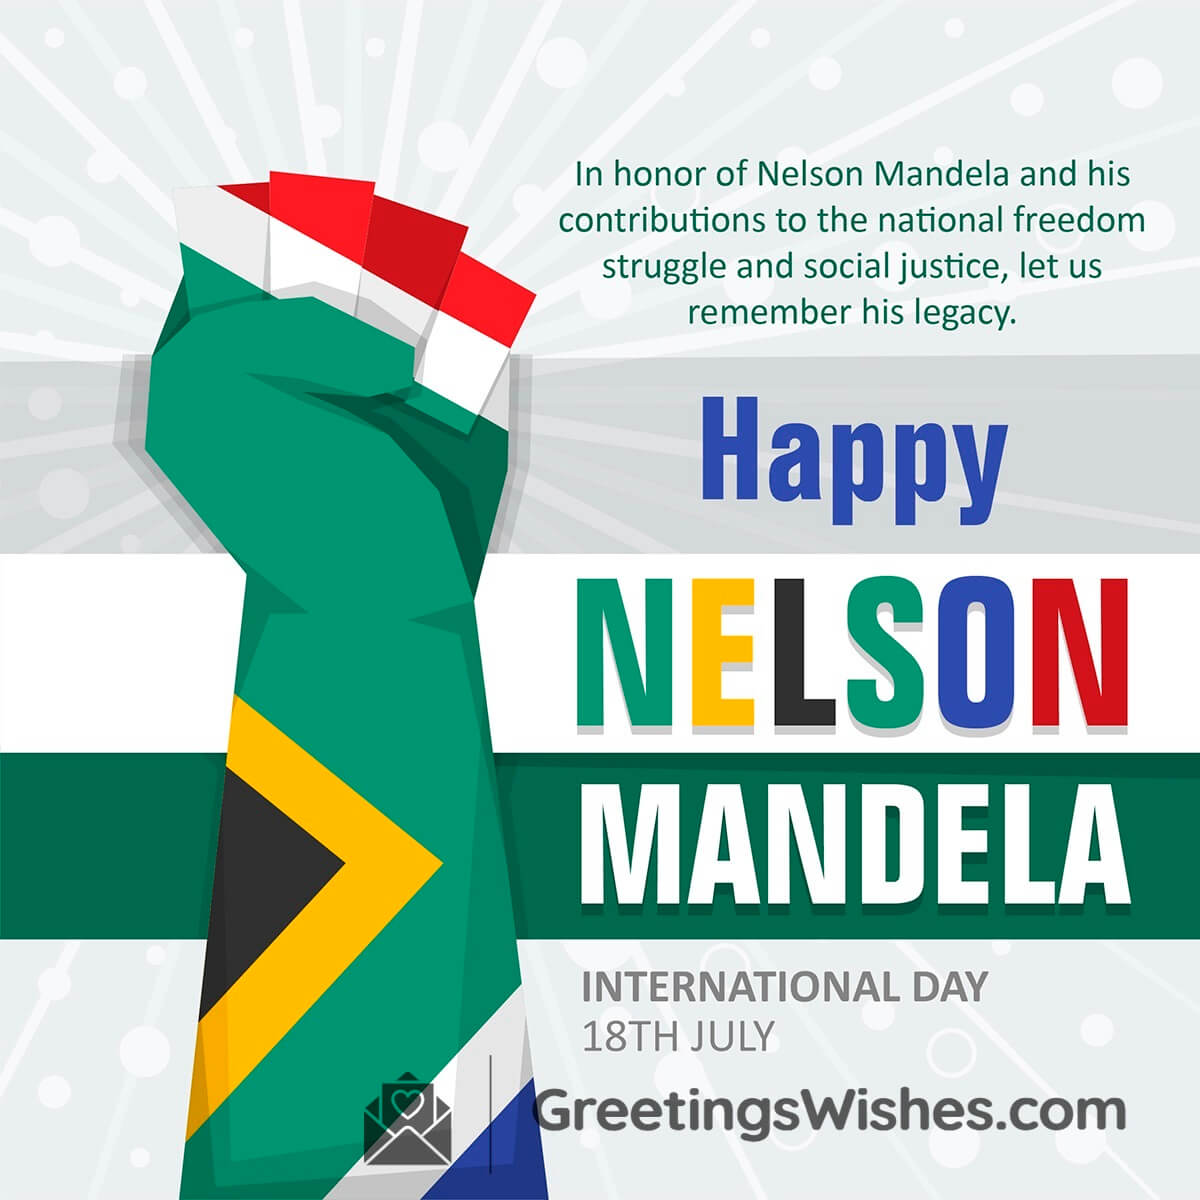 Nelson Mandela International Day Wishes